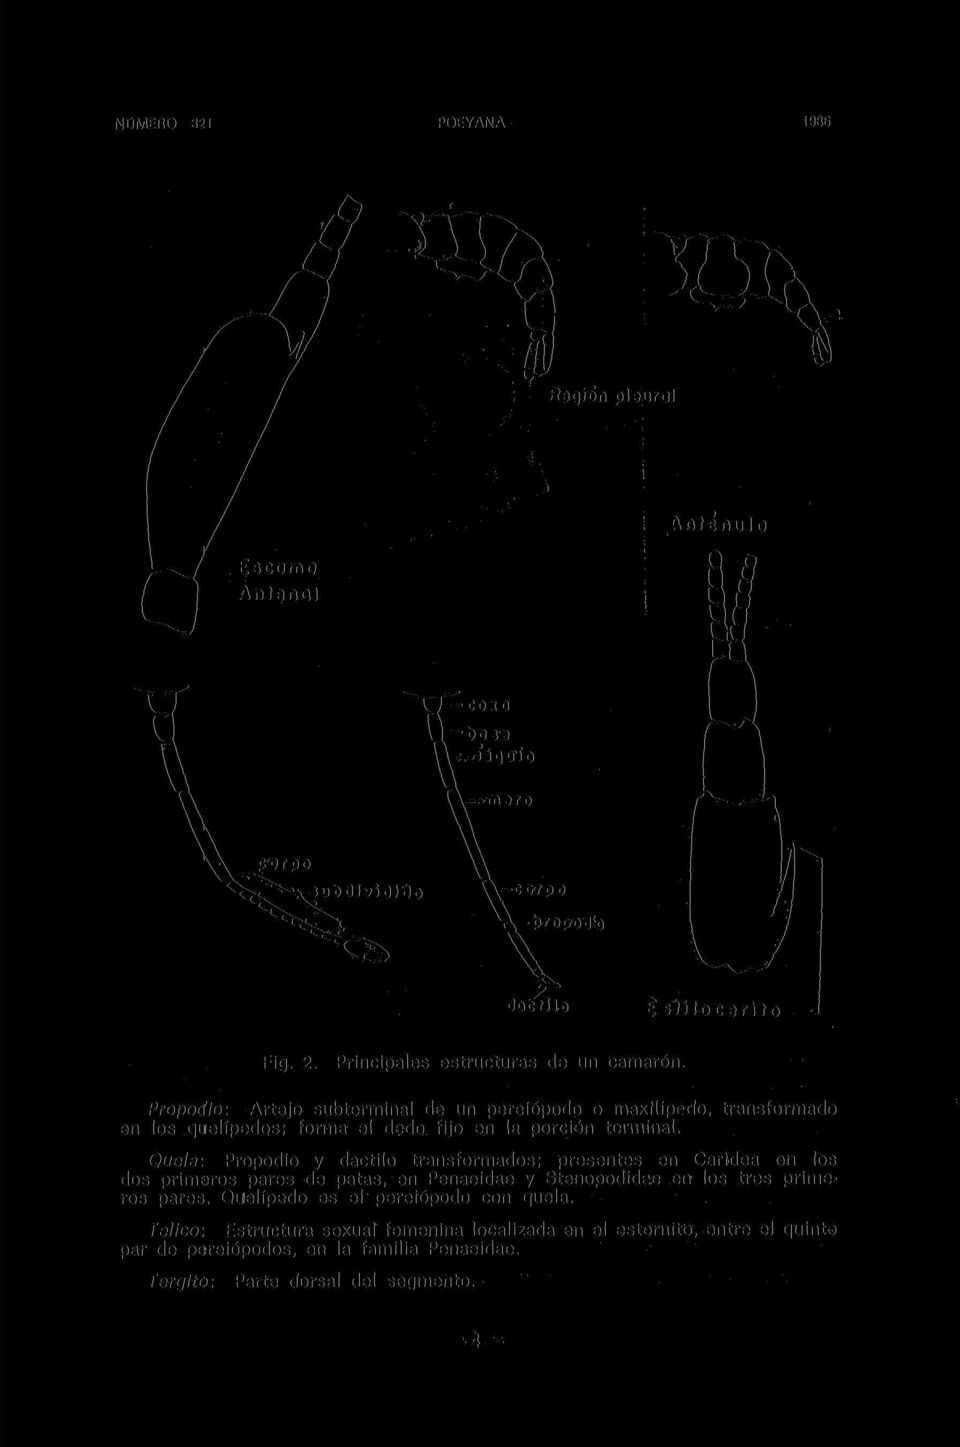 Propoú'io: Artejo subterminal de un pereiópodo o maxflípedo, transformado en los quelípedos; forma el dedo fijo en la porción terminal.